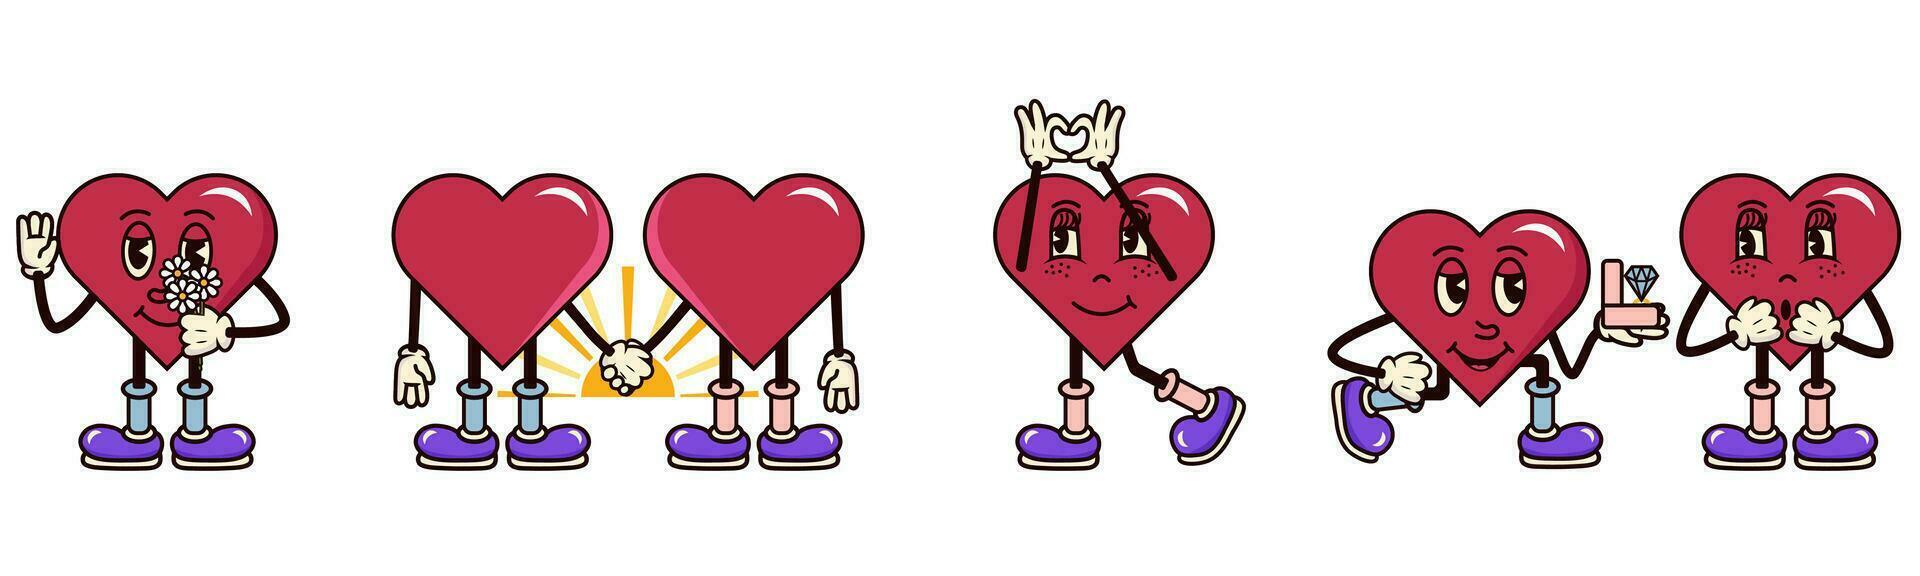 hart karakter stickers retro groovy vector